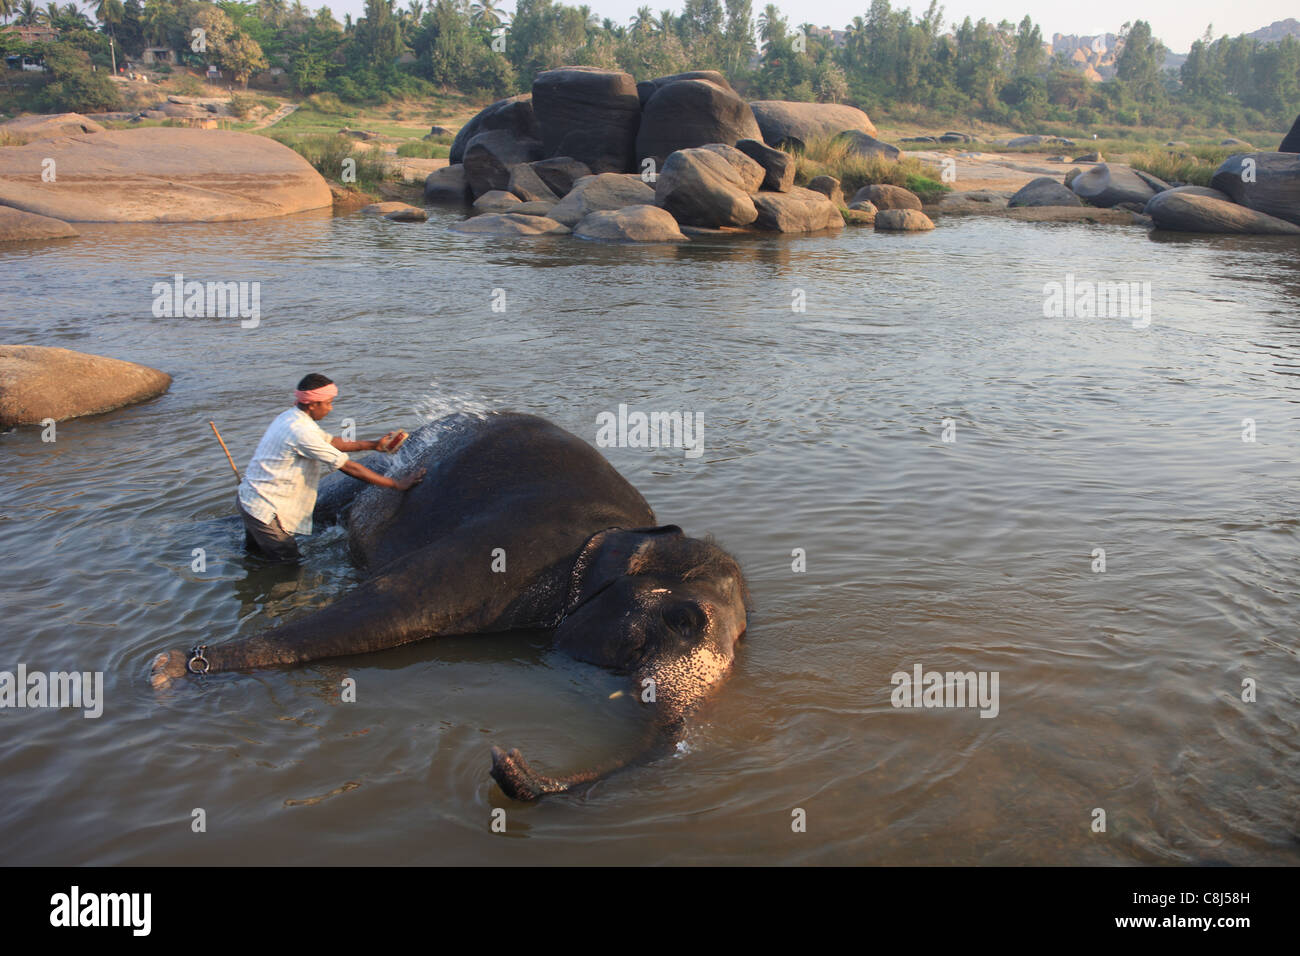 L'éléphant indien, Elephas maximus indicus, Elephantidae, Hampi, Inde, Asie, Terai, animal, baignoire, baignoire d'éléphants Banque D'Images